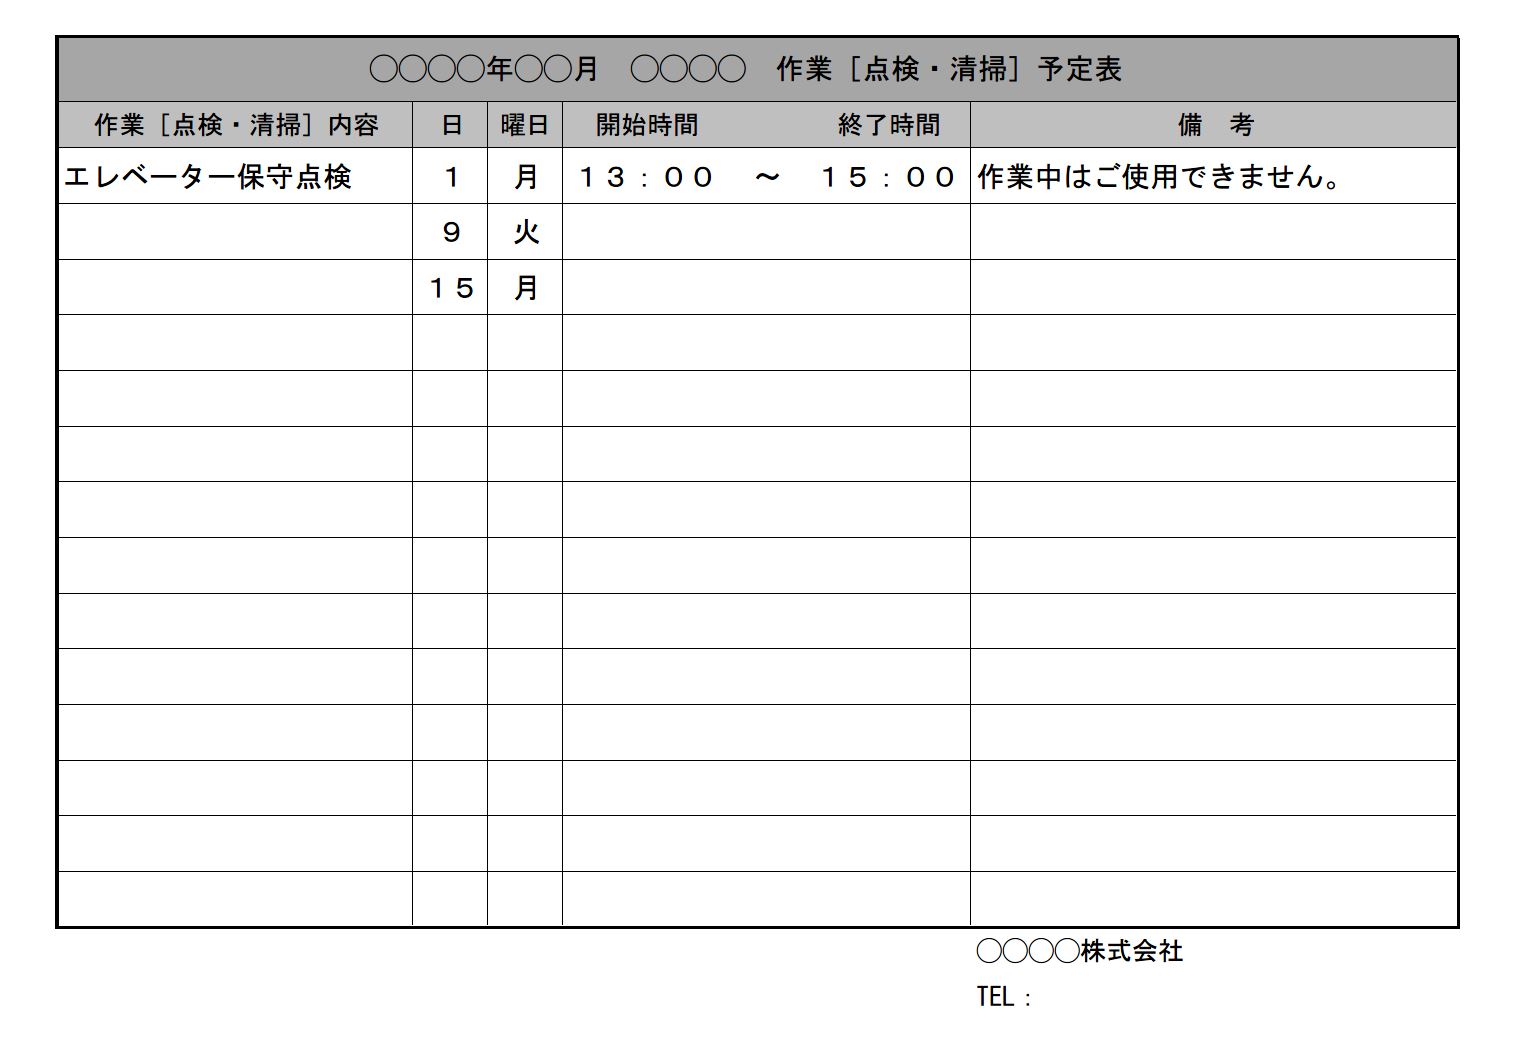 自治会 町内会 月間作業予定表の書式 様式 フォーマット 雛形 ひな形 テンプレート エクセル Excel 01 文書 テンプレートの無料ダウンロード